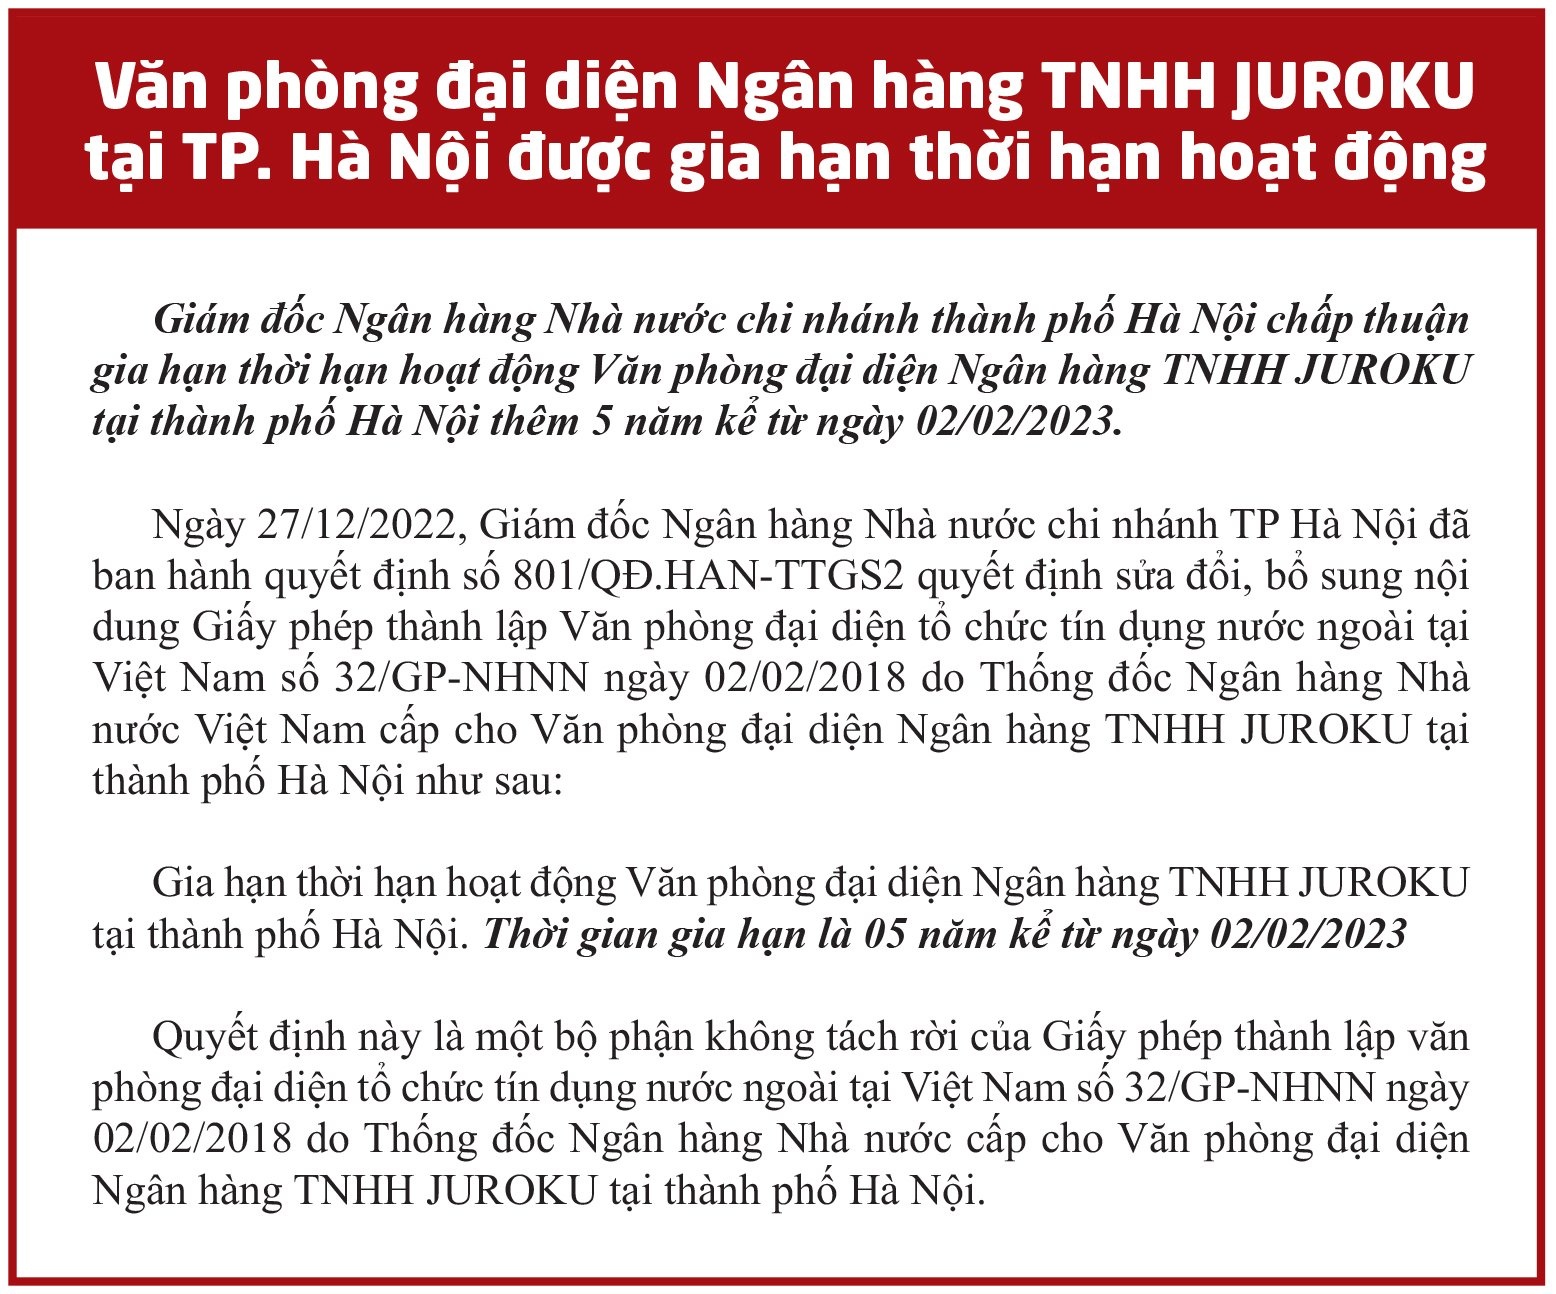 Văn phòng đại diện Ngân hàng TNHH JUROKU tại Hà Nội được gia hạn hoạt động